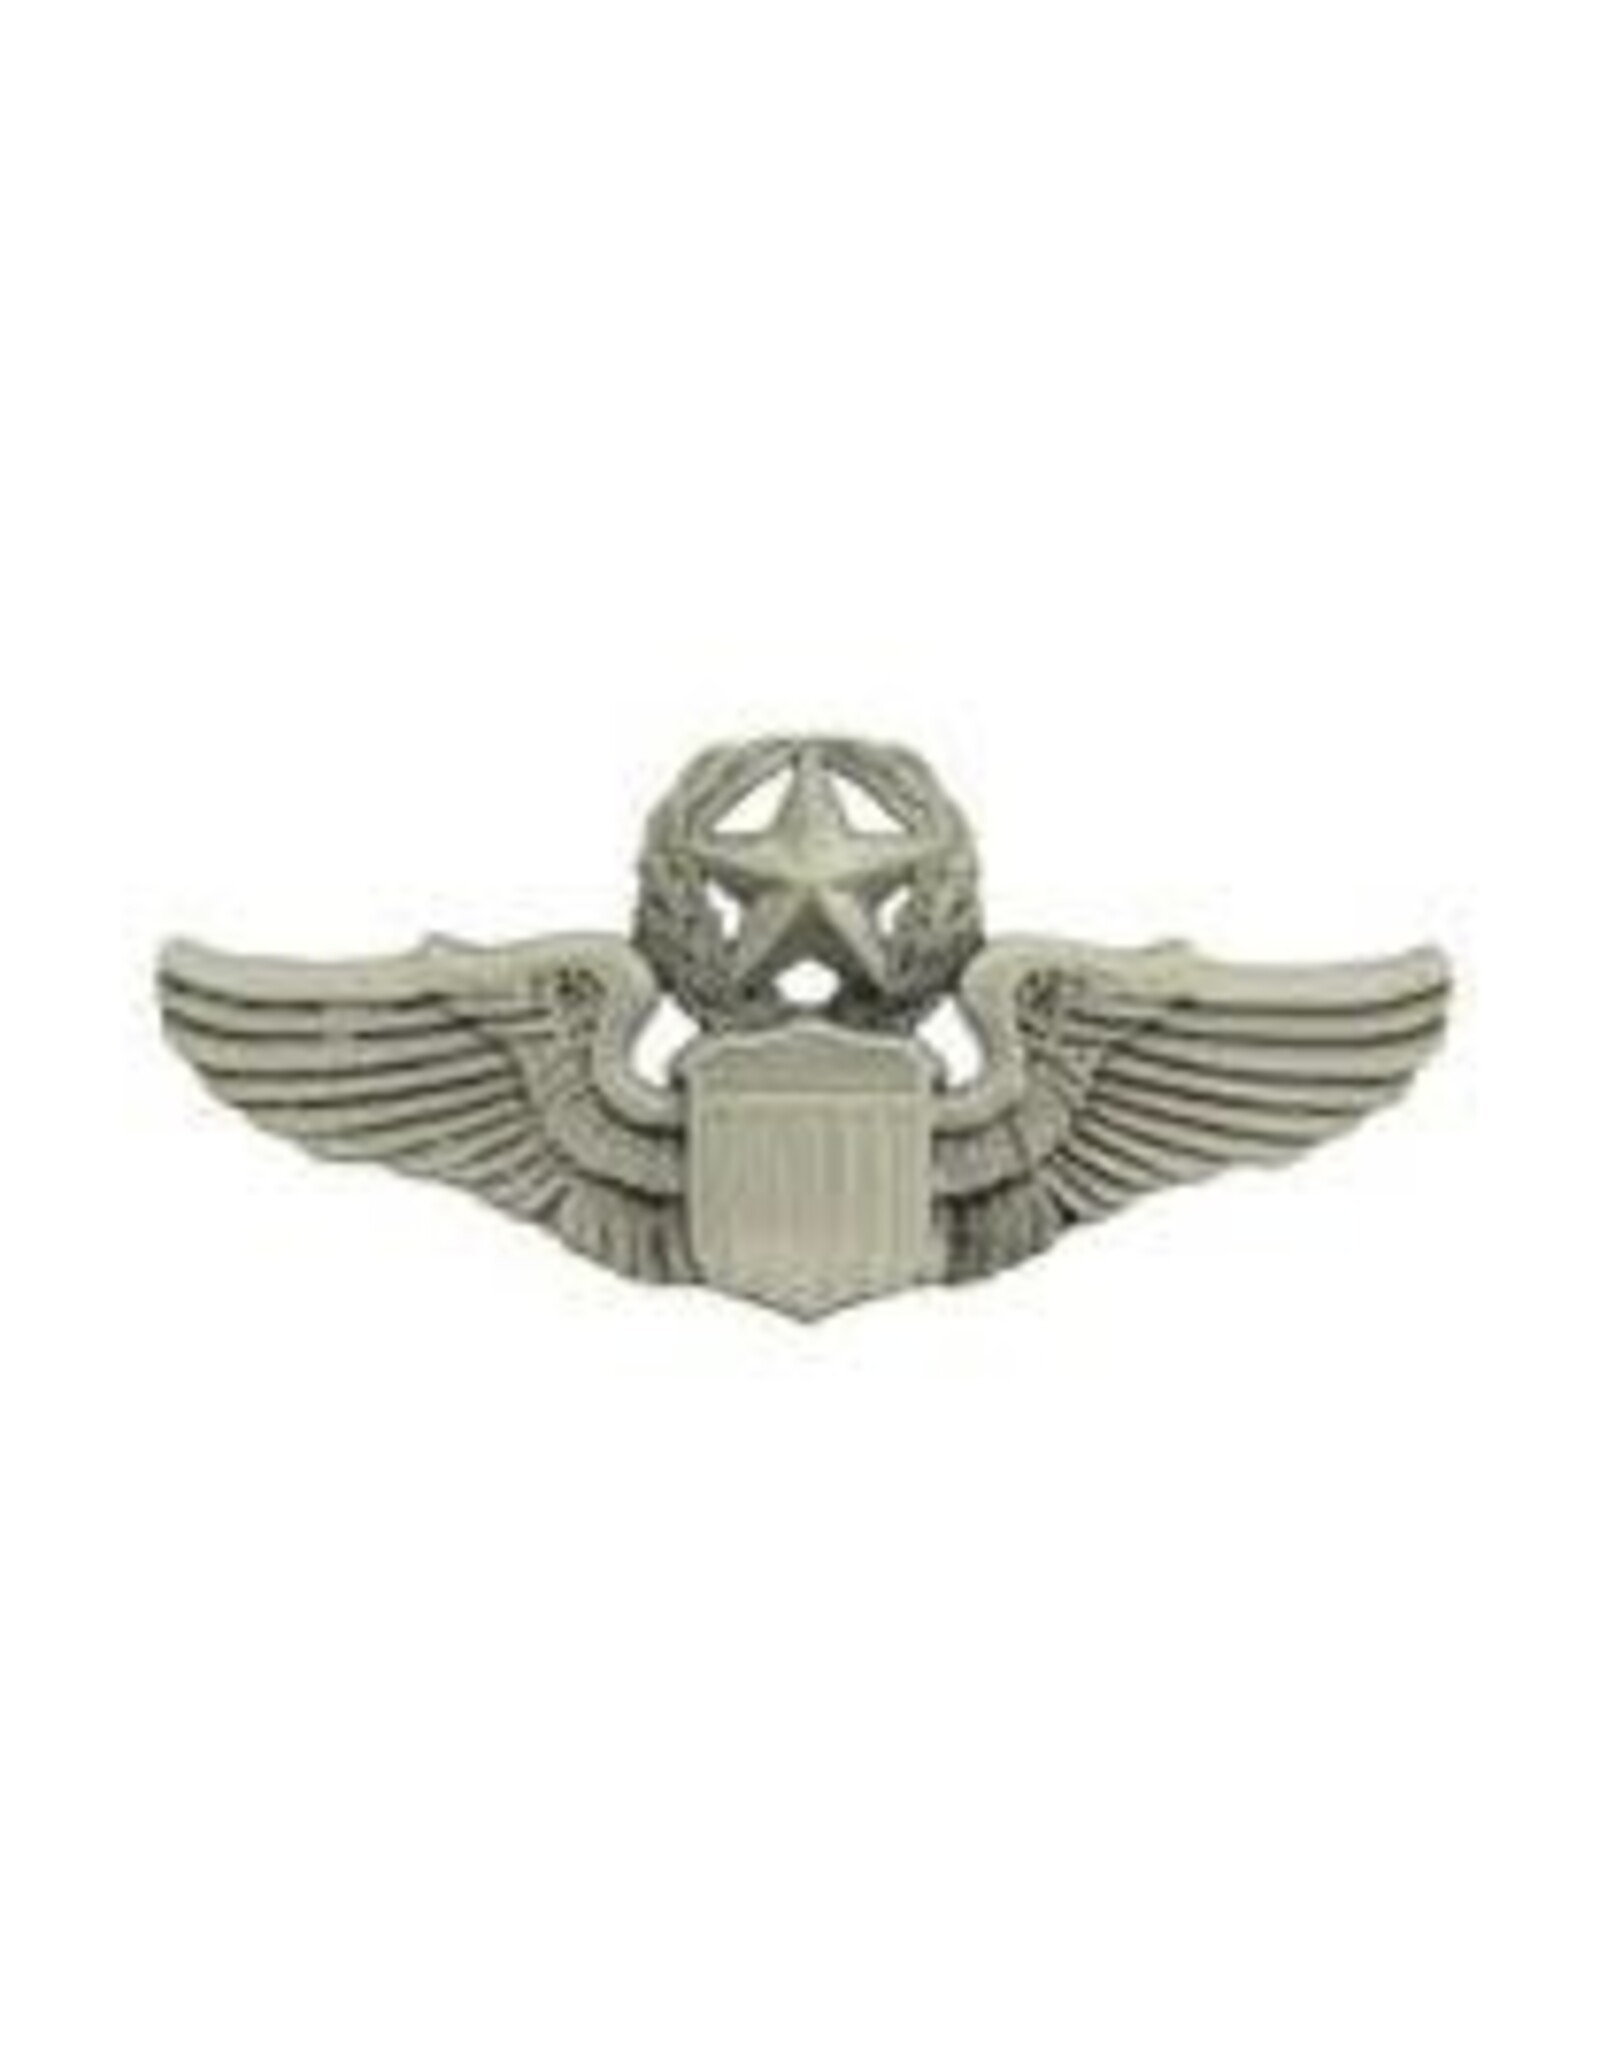 Pin - Wing USAF Pilot Master